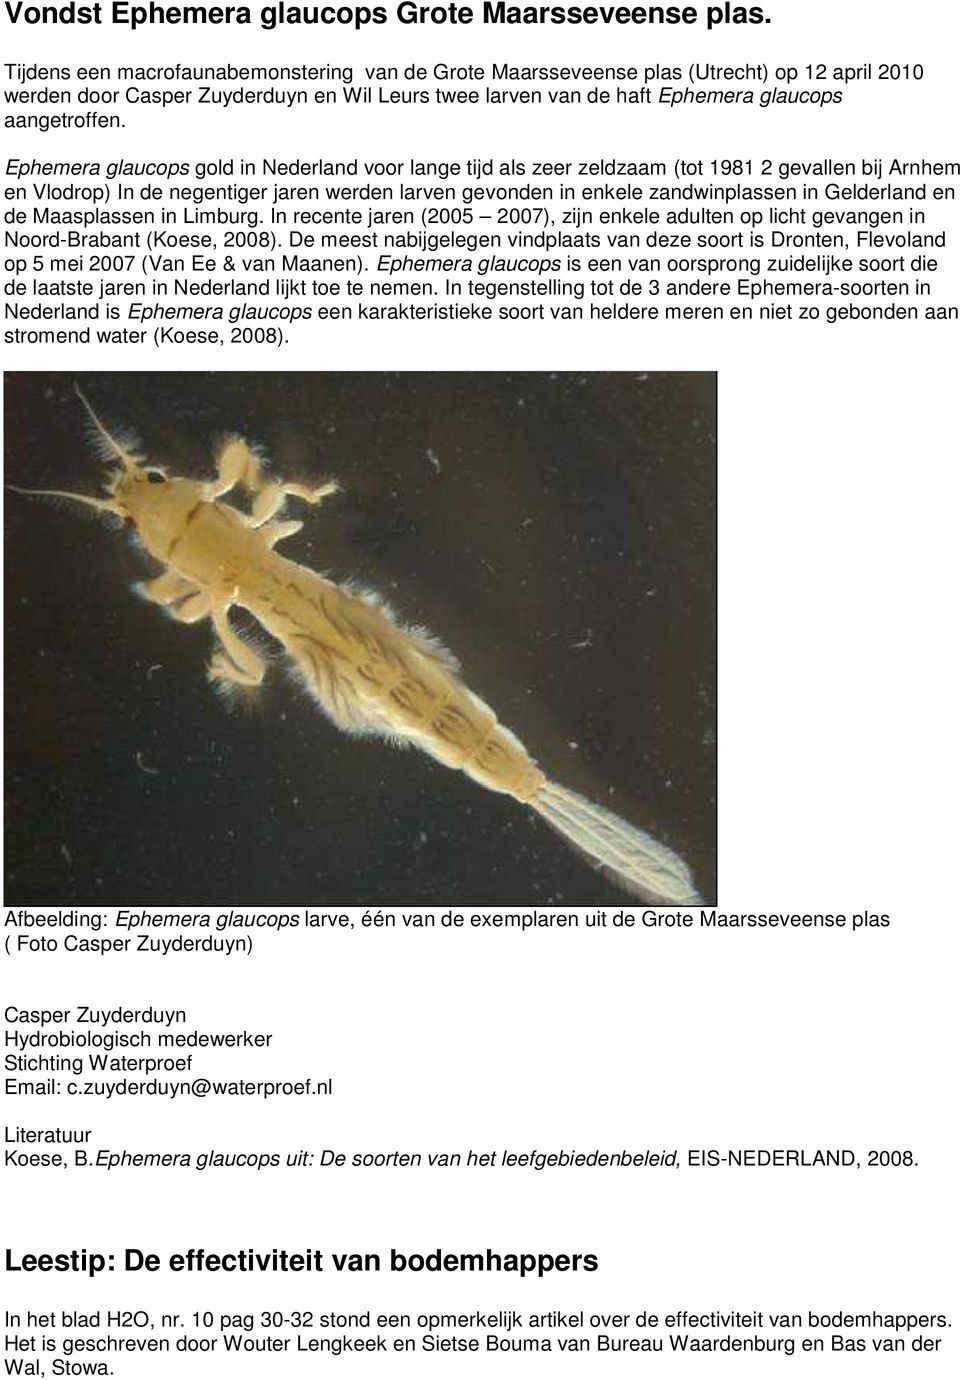 Ephemera glaucops gold in Nederland voor lange tijd als zeer zeldzaam (tot 1981 2 gevallen bij Arnhem en Vlodrop) In de negentiger jaren werden larven gevonden in enkele zandwinplassen in Gelderland